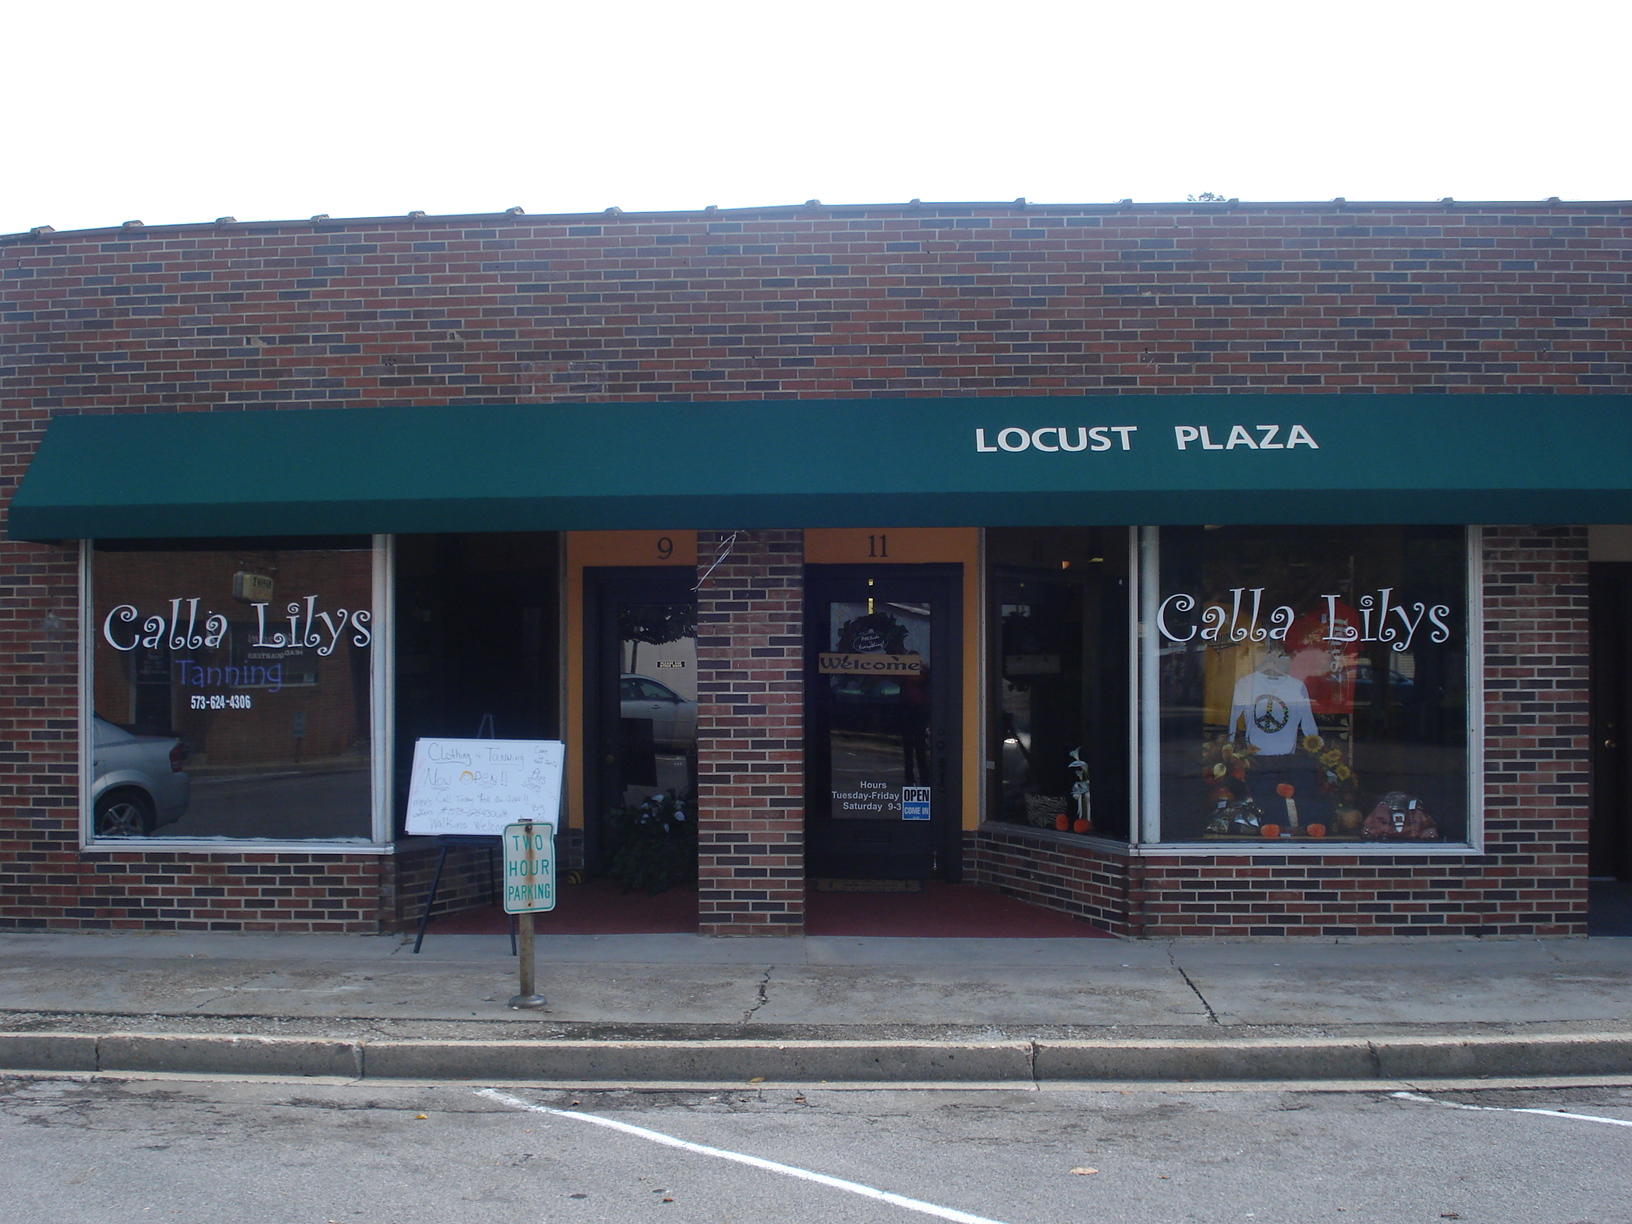 Calla Lily's LLC 11 S Locust St, Dexter Missouri 63841